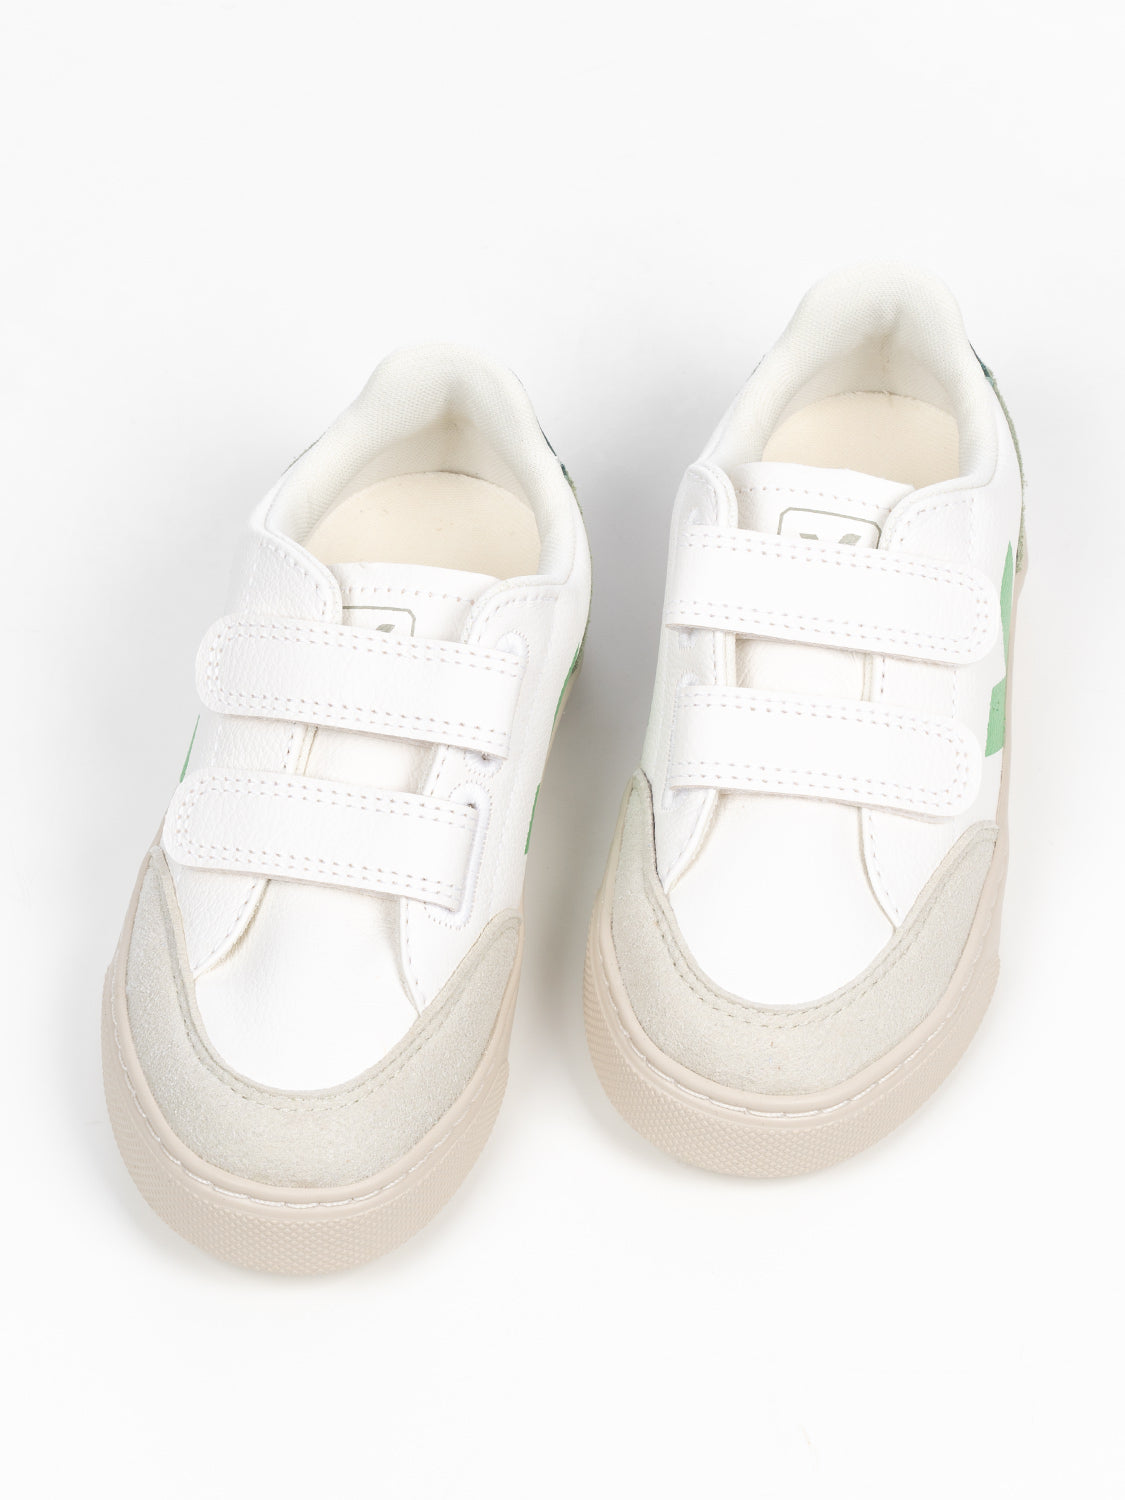 Small V-12CF Klettverschluss Sneaker - Weiß/Grün